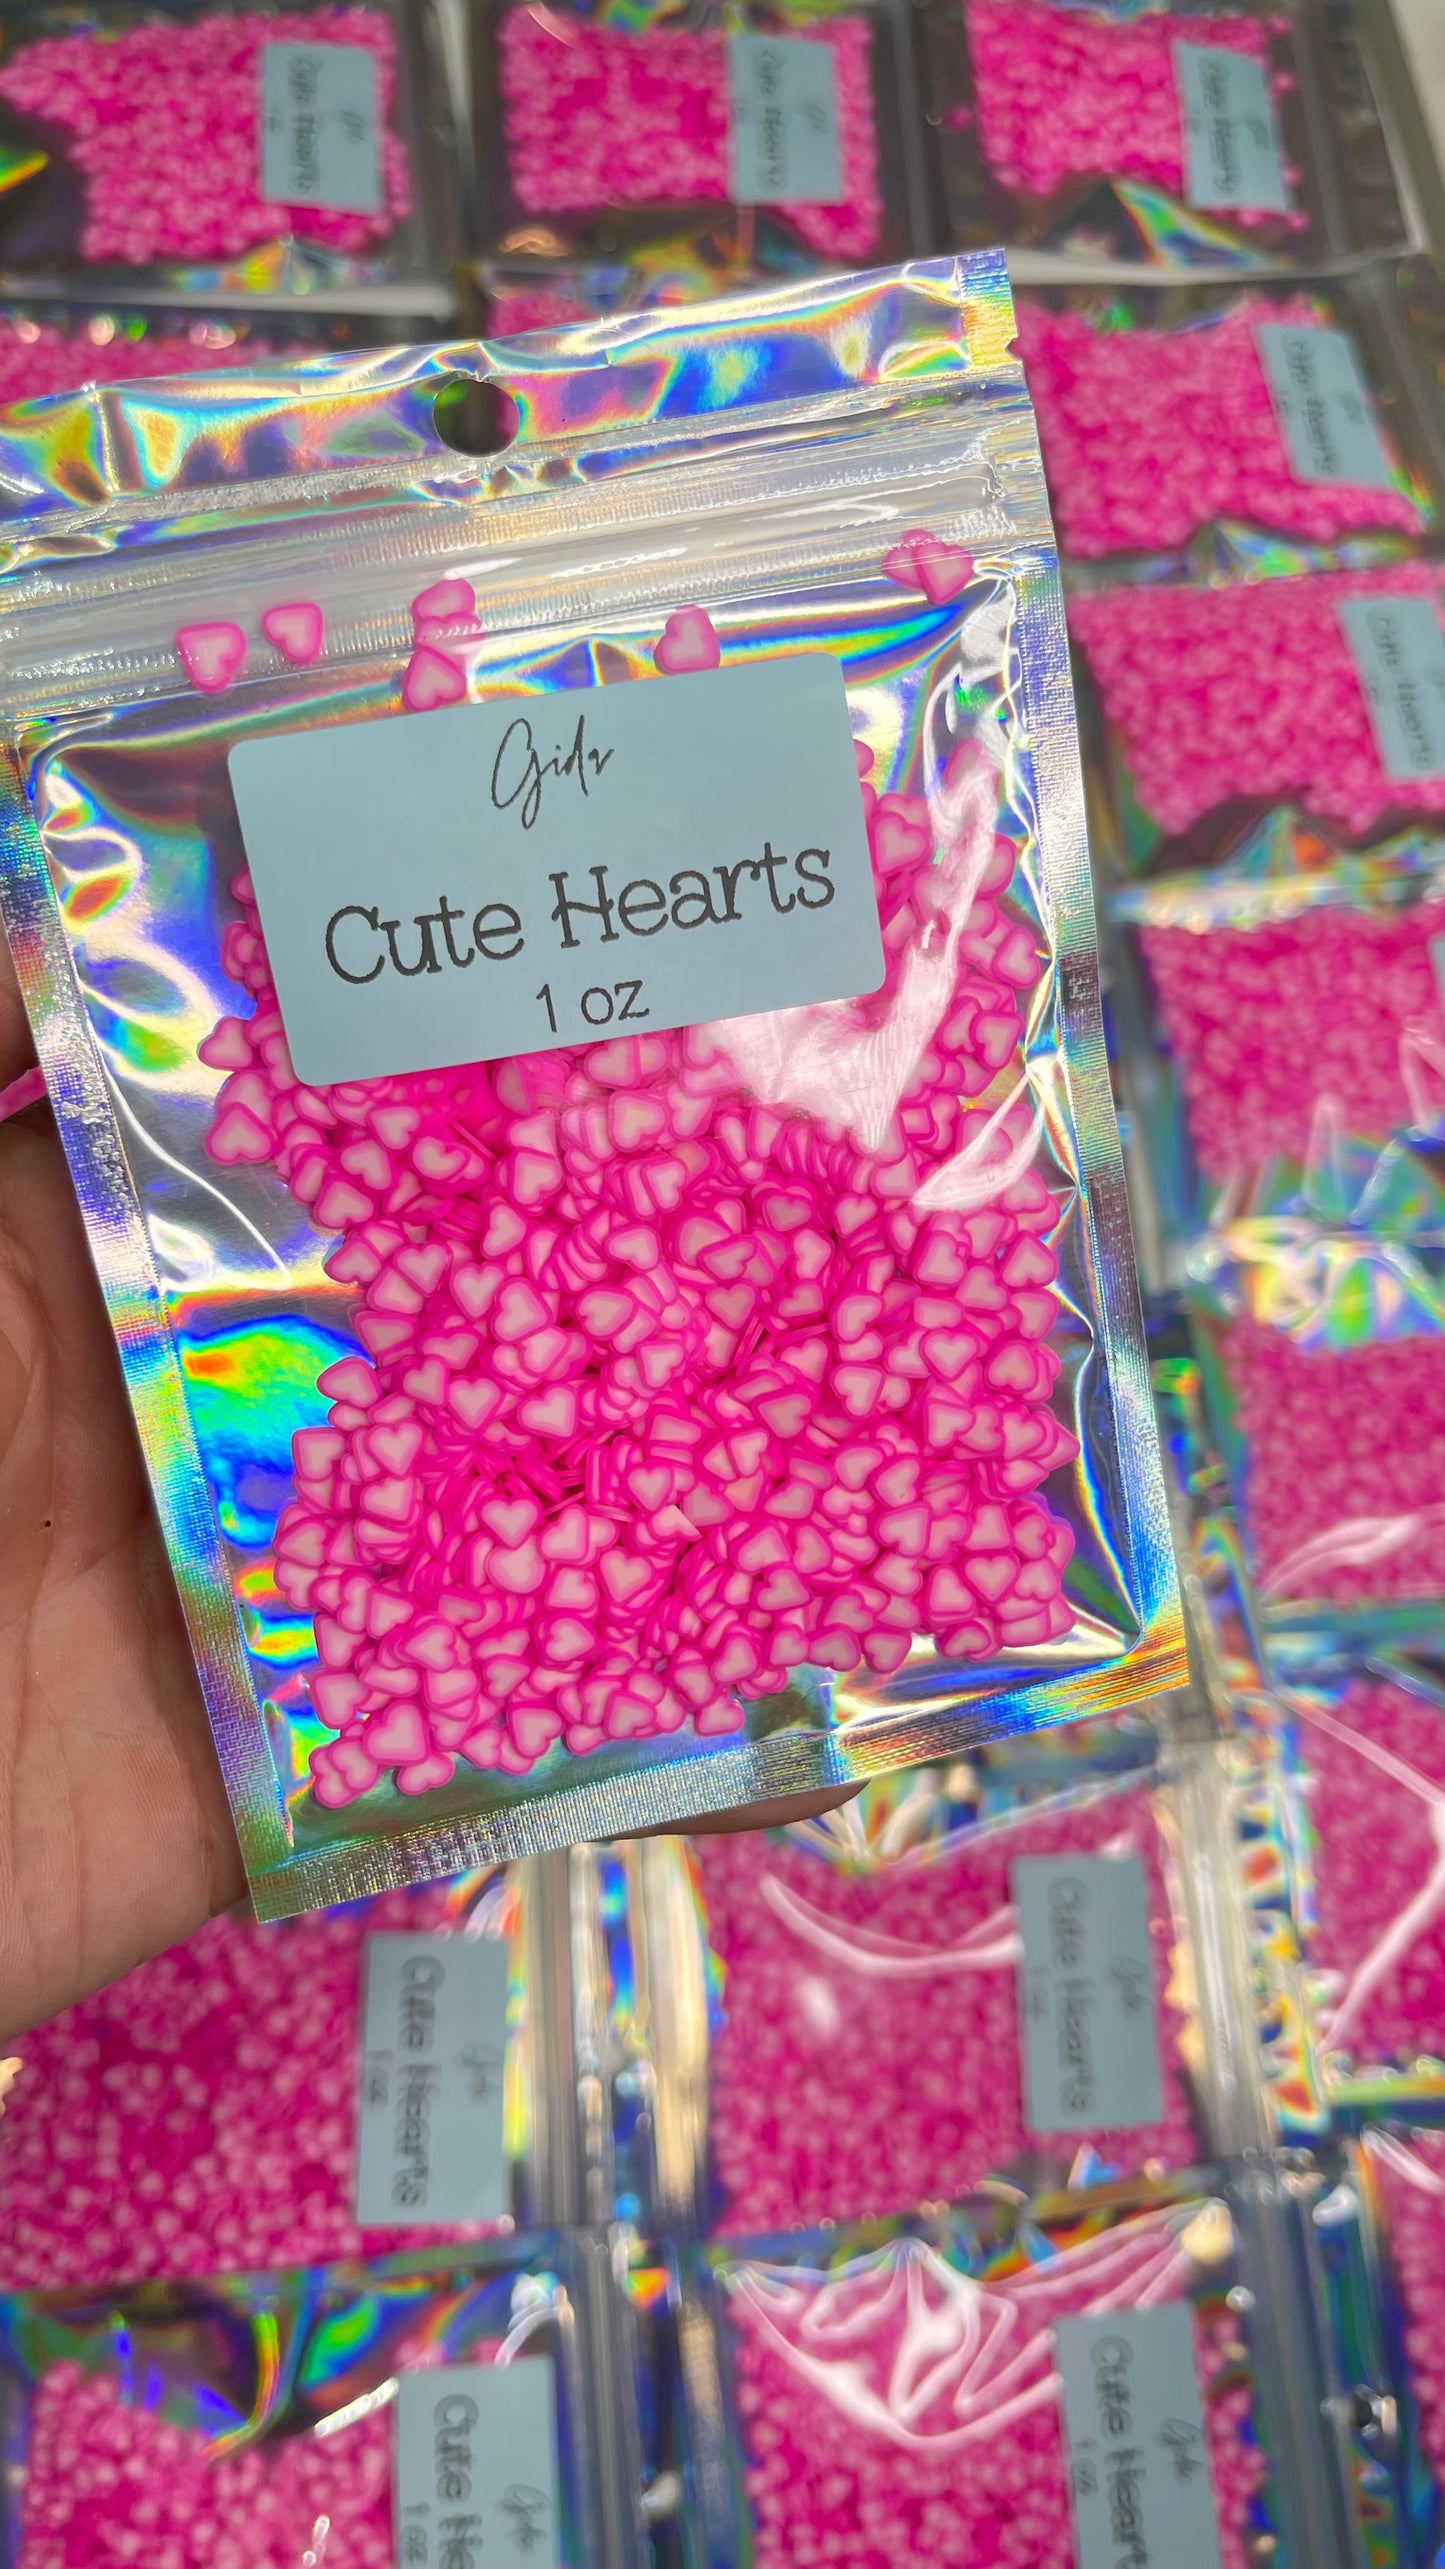 Cute Hearts Polymer clay 1 oz - GIDA DESIGN 